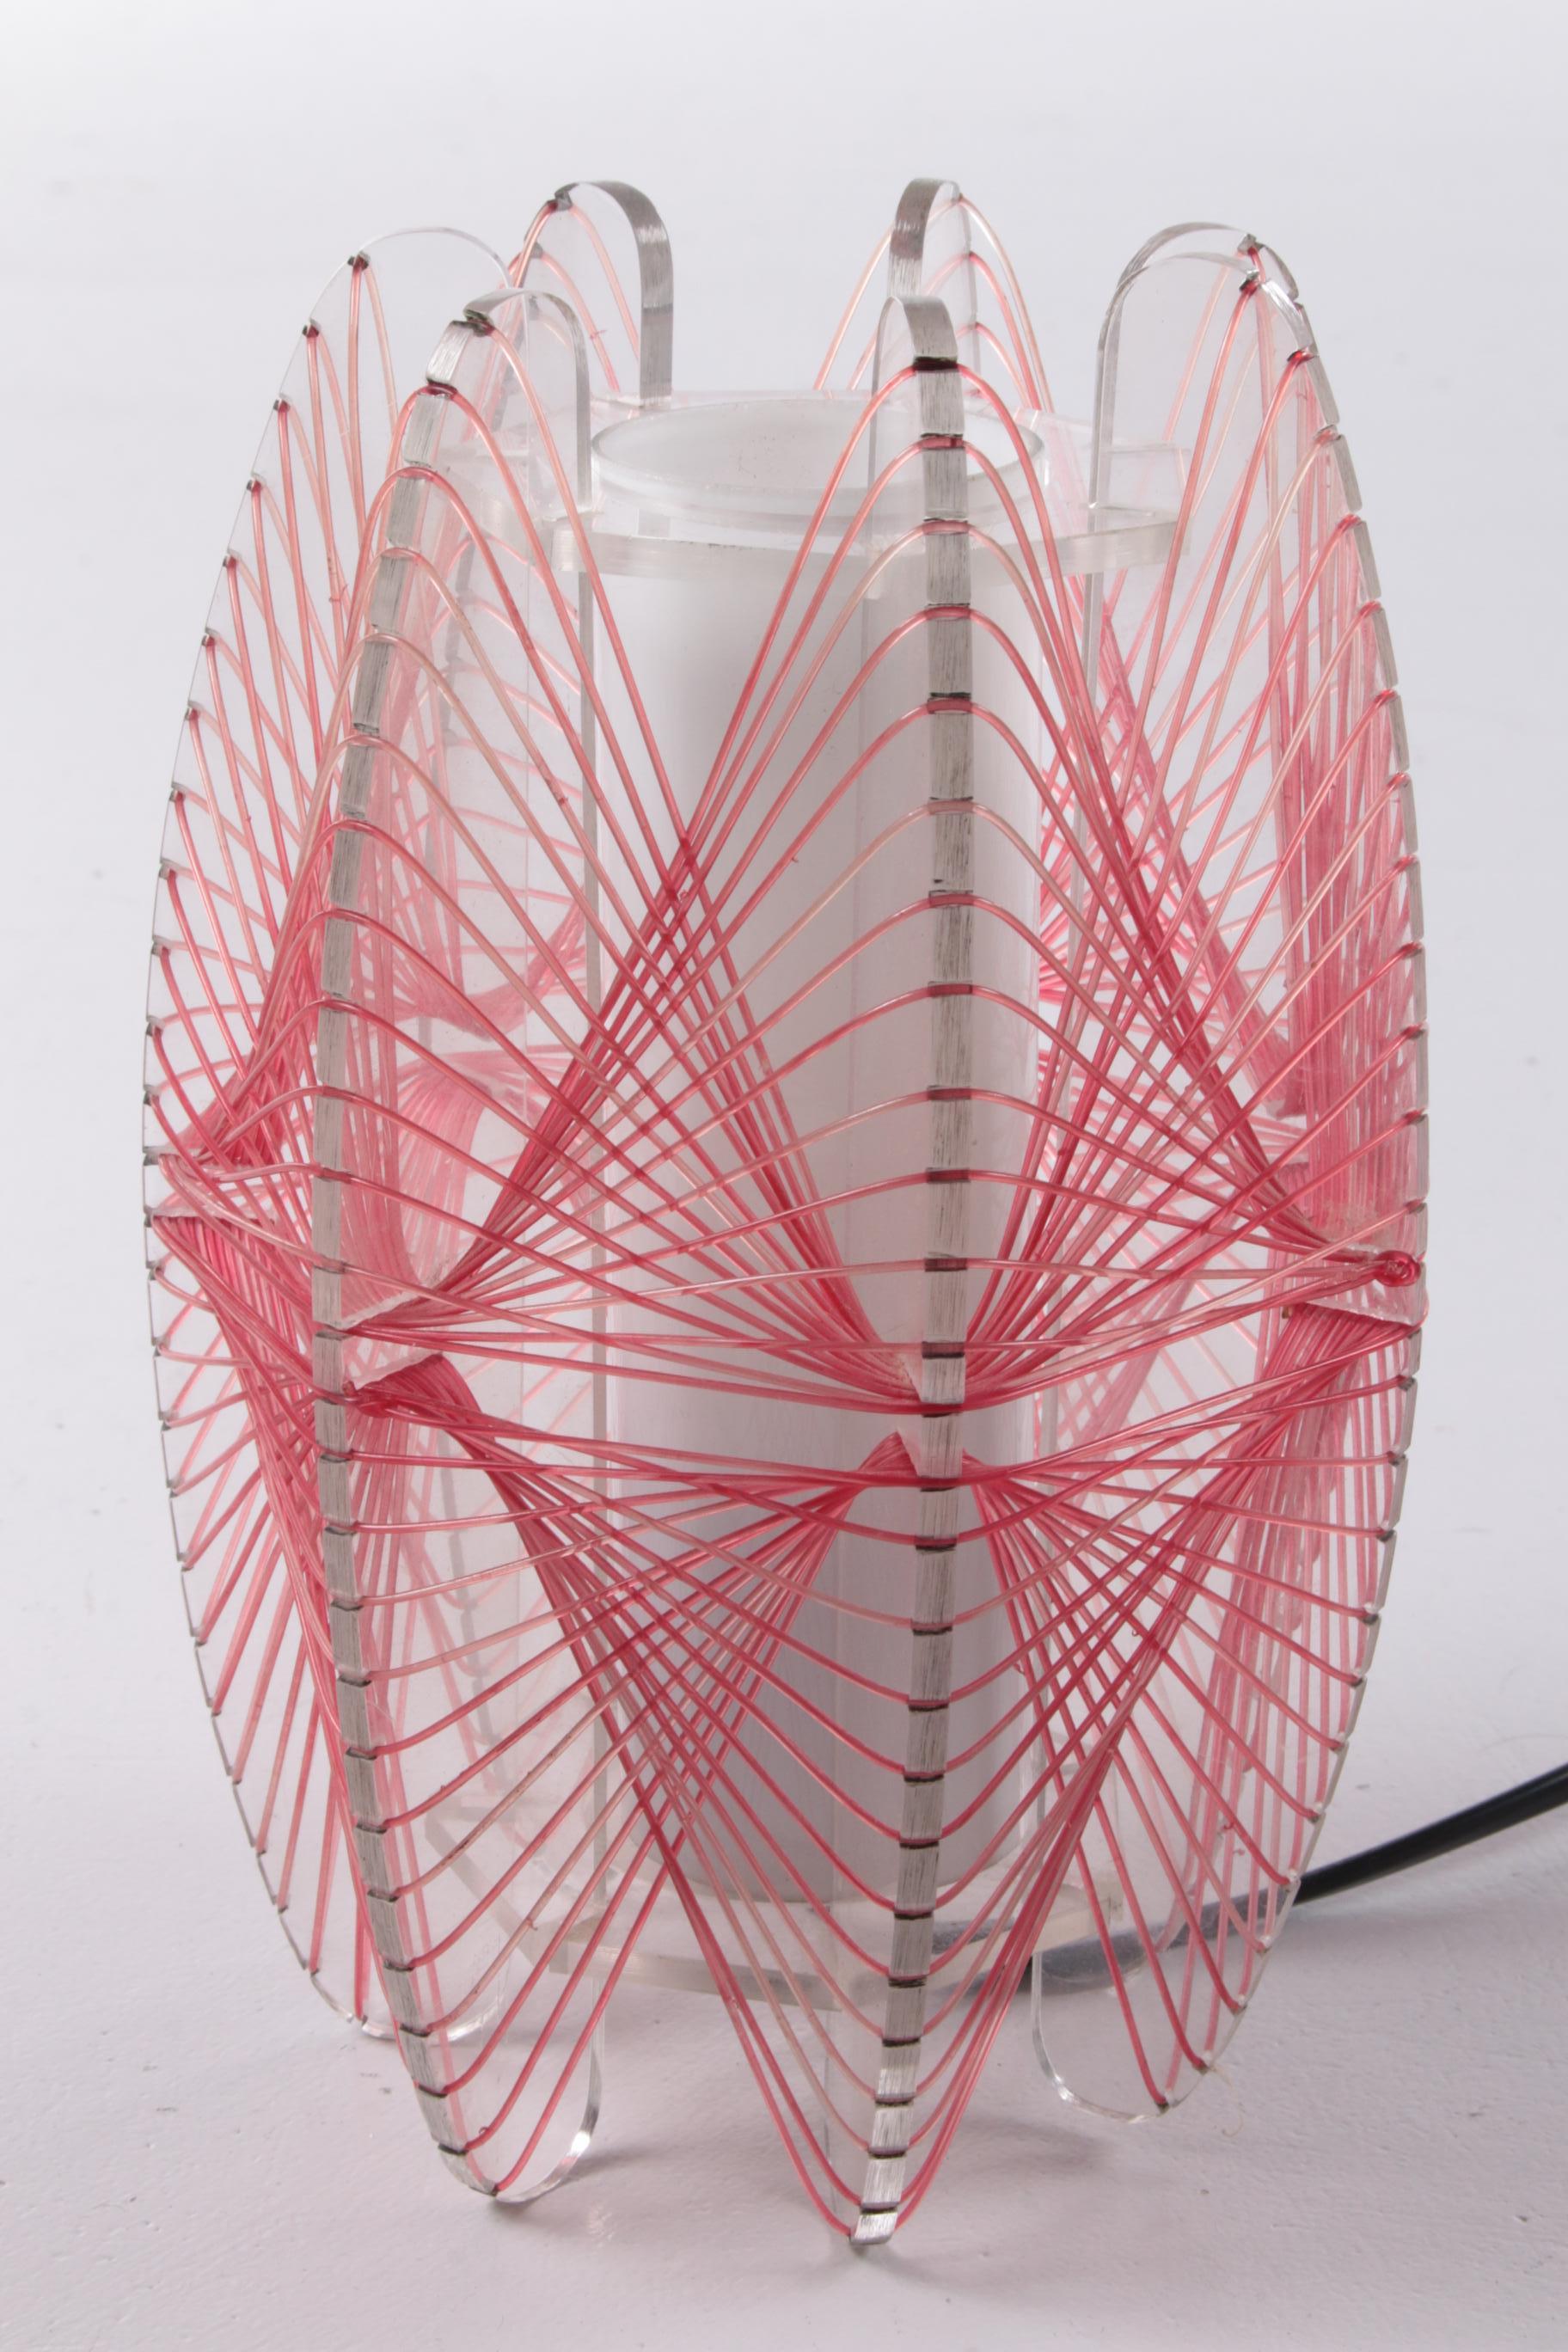 Vieille lampe de table en forme de toile d'araignée 1960s


Il s'agit d'une belle lampe de table faite de fil de plastique aussi appelé spinnerag.

Cette lampe a probablement été fabriquée en République tchèque en 1960.

Magnifique comme